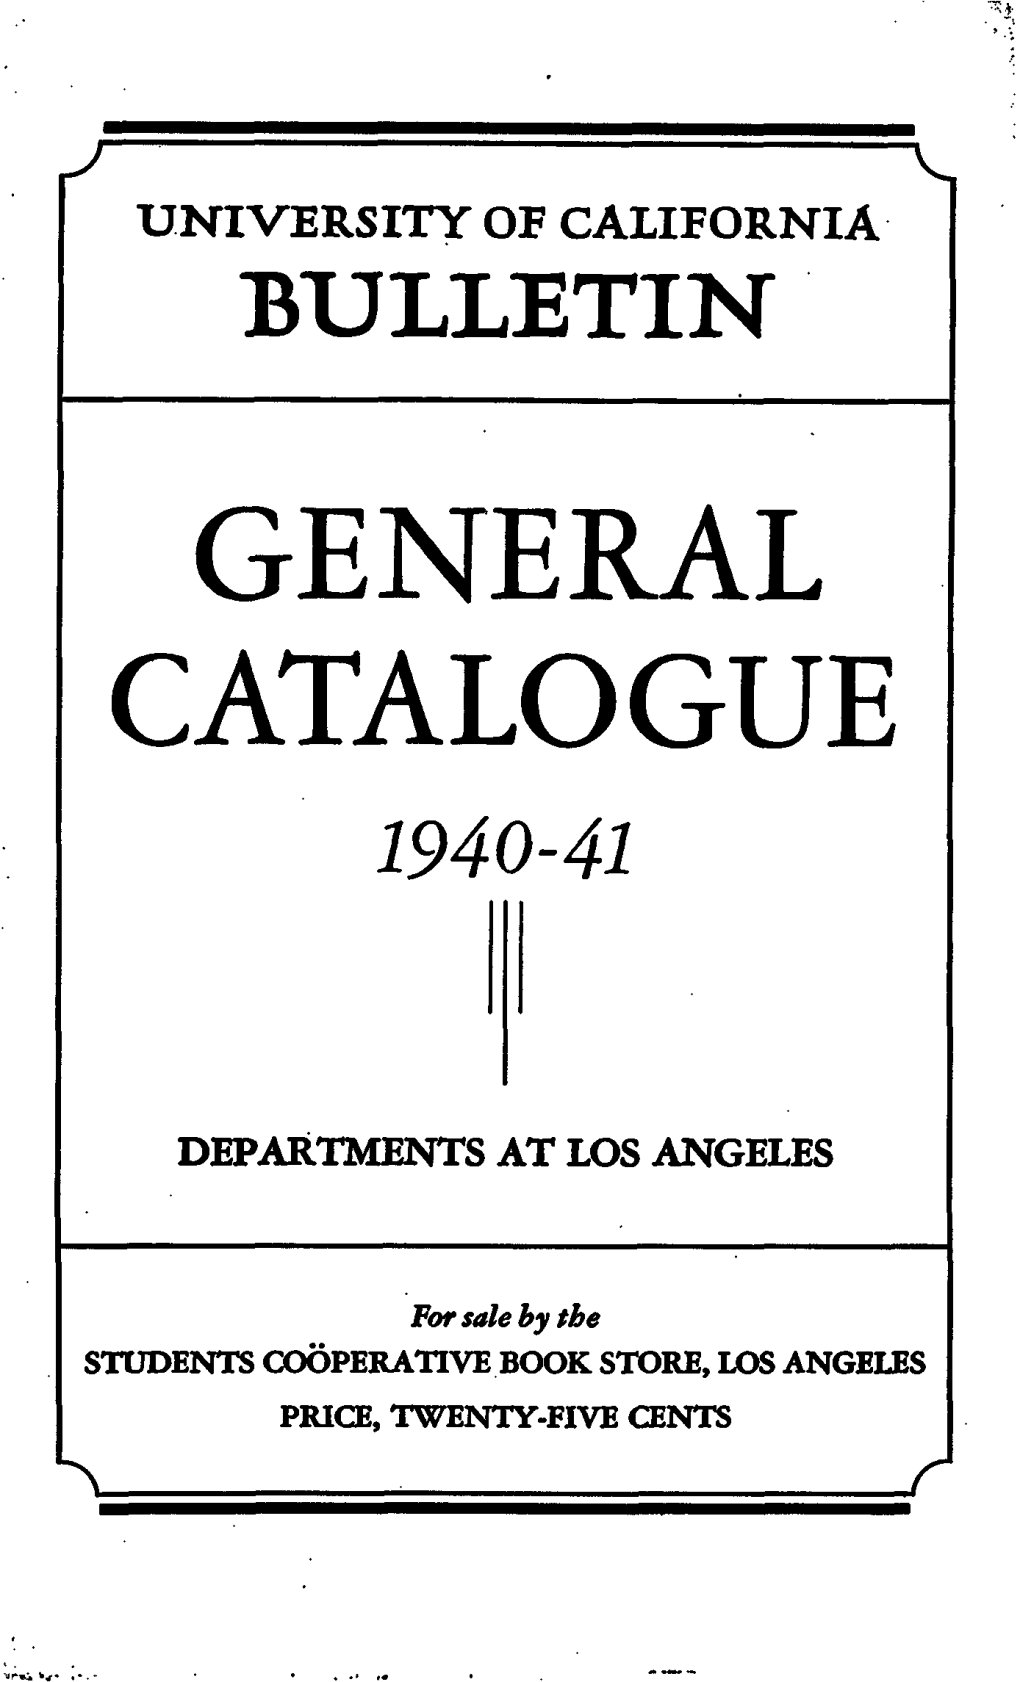 University of California Bulletin General Catalogue 1940-41